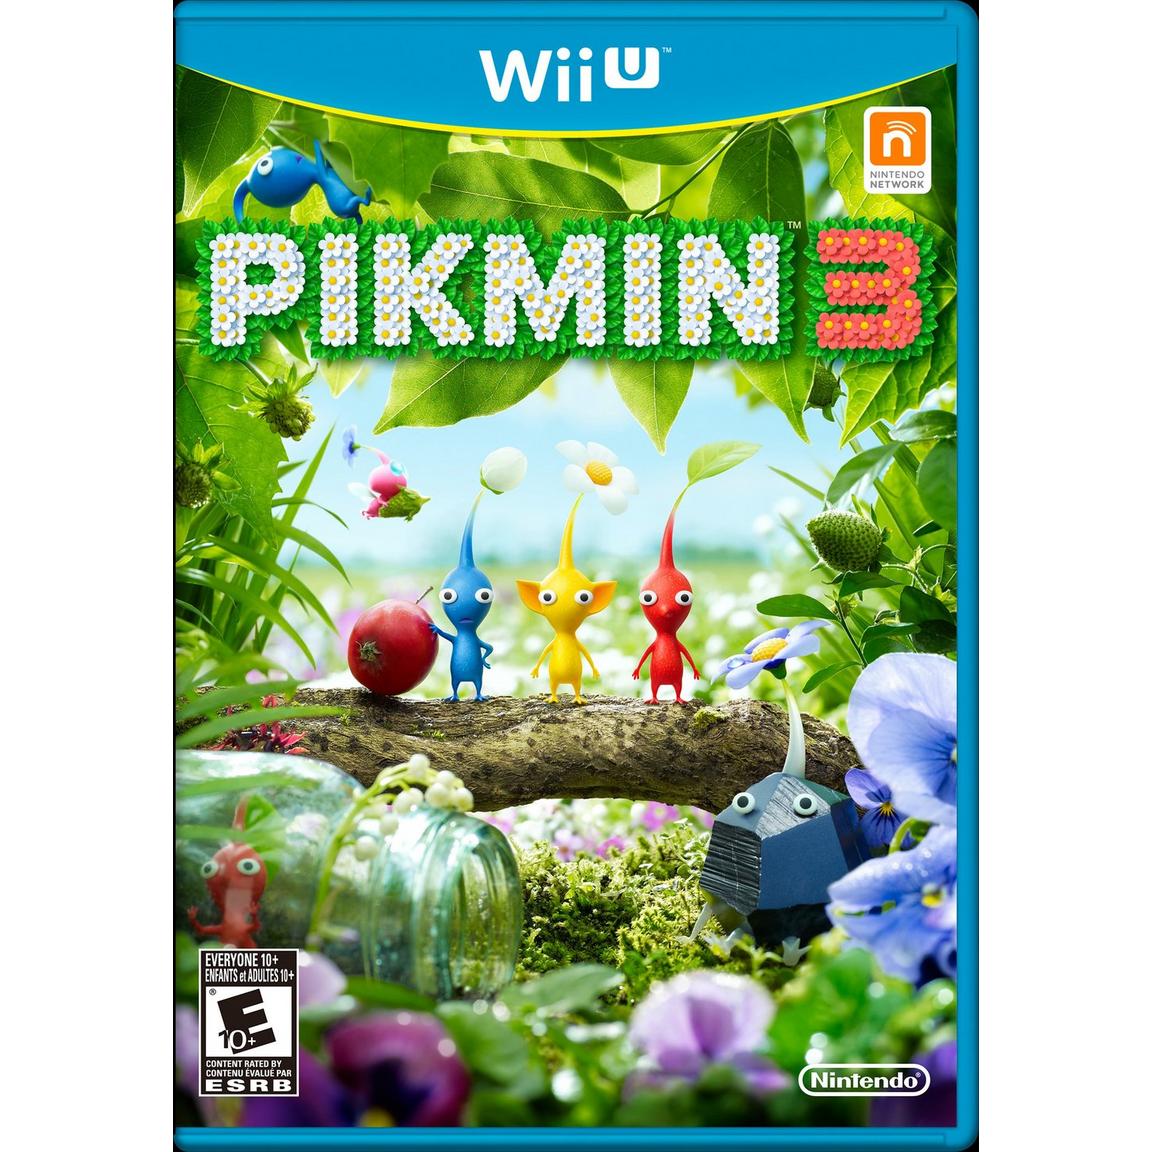 Pikmin 3 - Nintendo Wii U, Pre-Owned